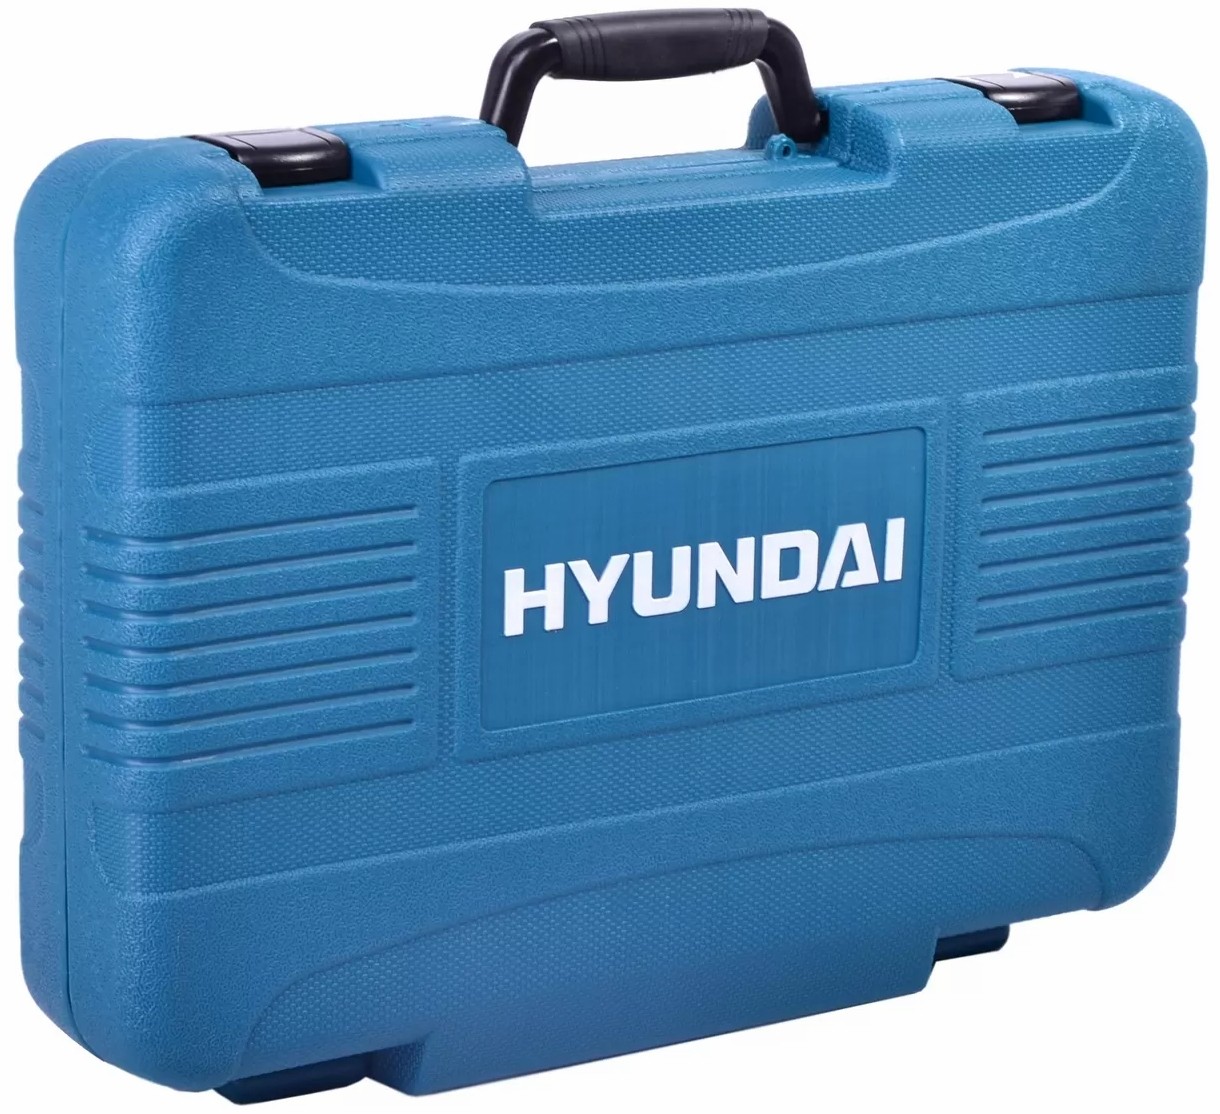 Универсальный набор инструментов Hyundai K 98 отзывы - изображения 5